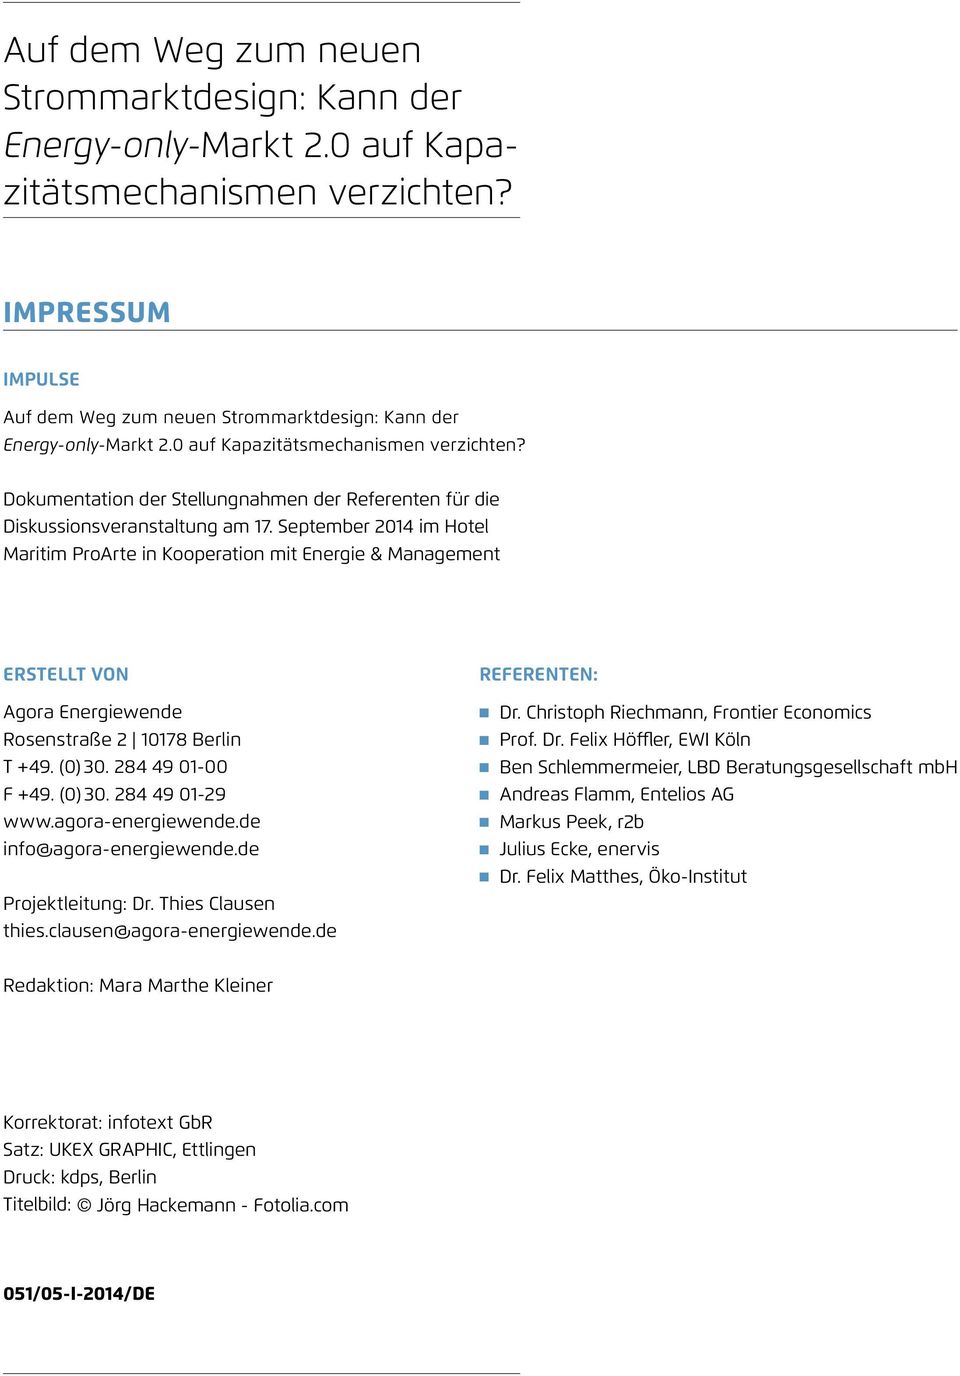 September 2014 im Hotel Maritim ProArte in Kooperation mit Energie & Management Erstellt von Agora Energiewende Rosenstraße 2 10178 Berlin T +49. (0) 30. 284 49 01-00 F +49. (0) 30. 284 49 01-29 www.